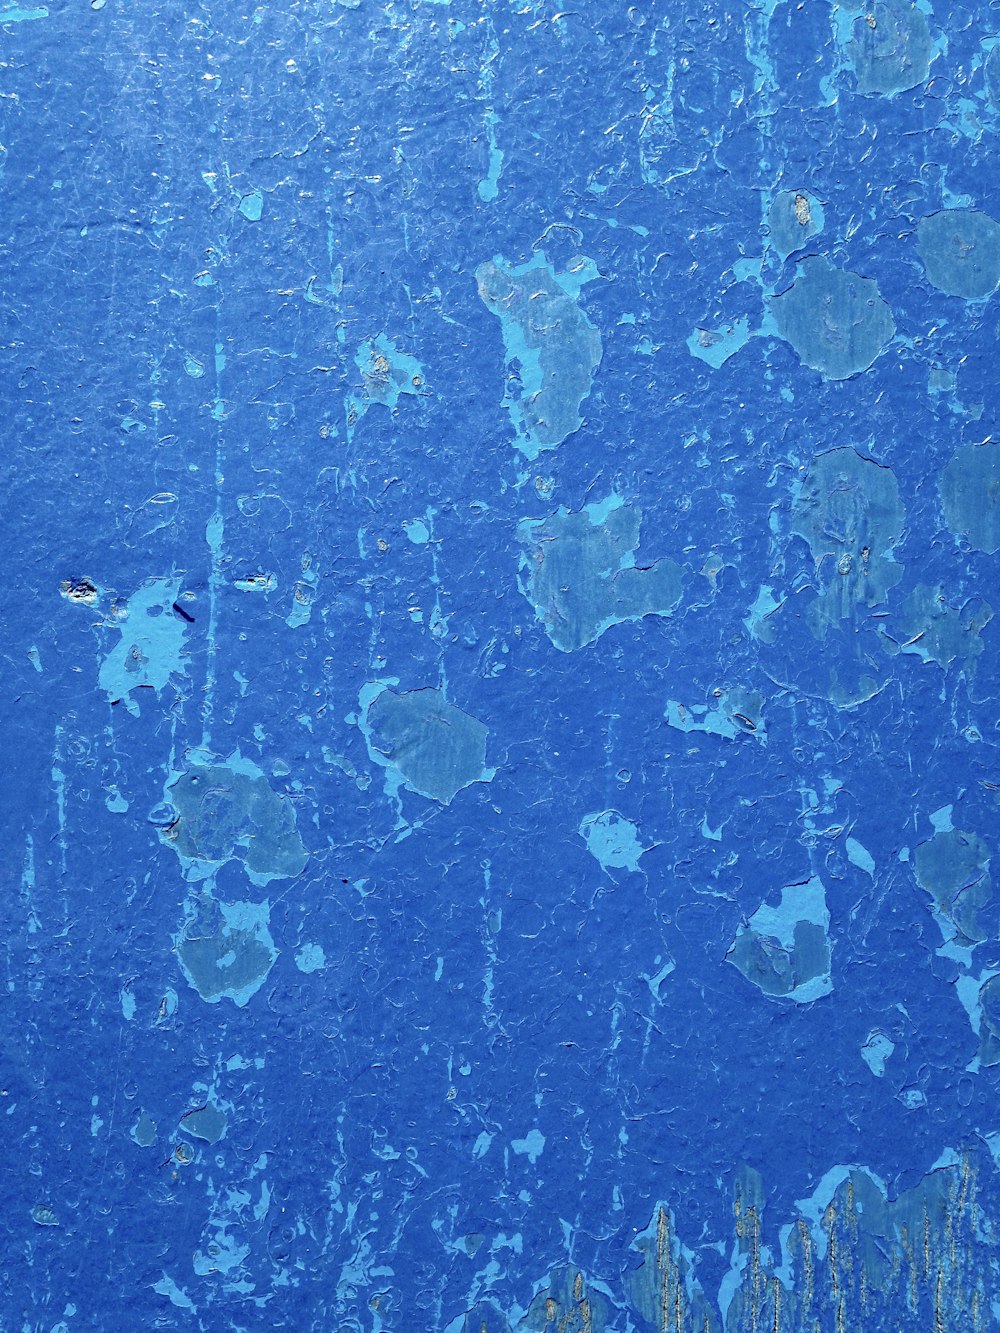 l’image d’un mur bleu qui semble avoir été peint